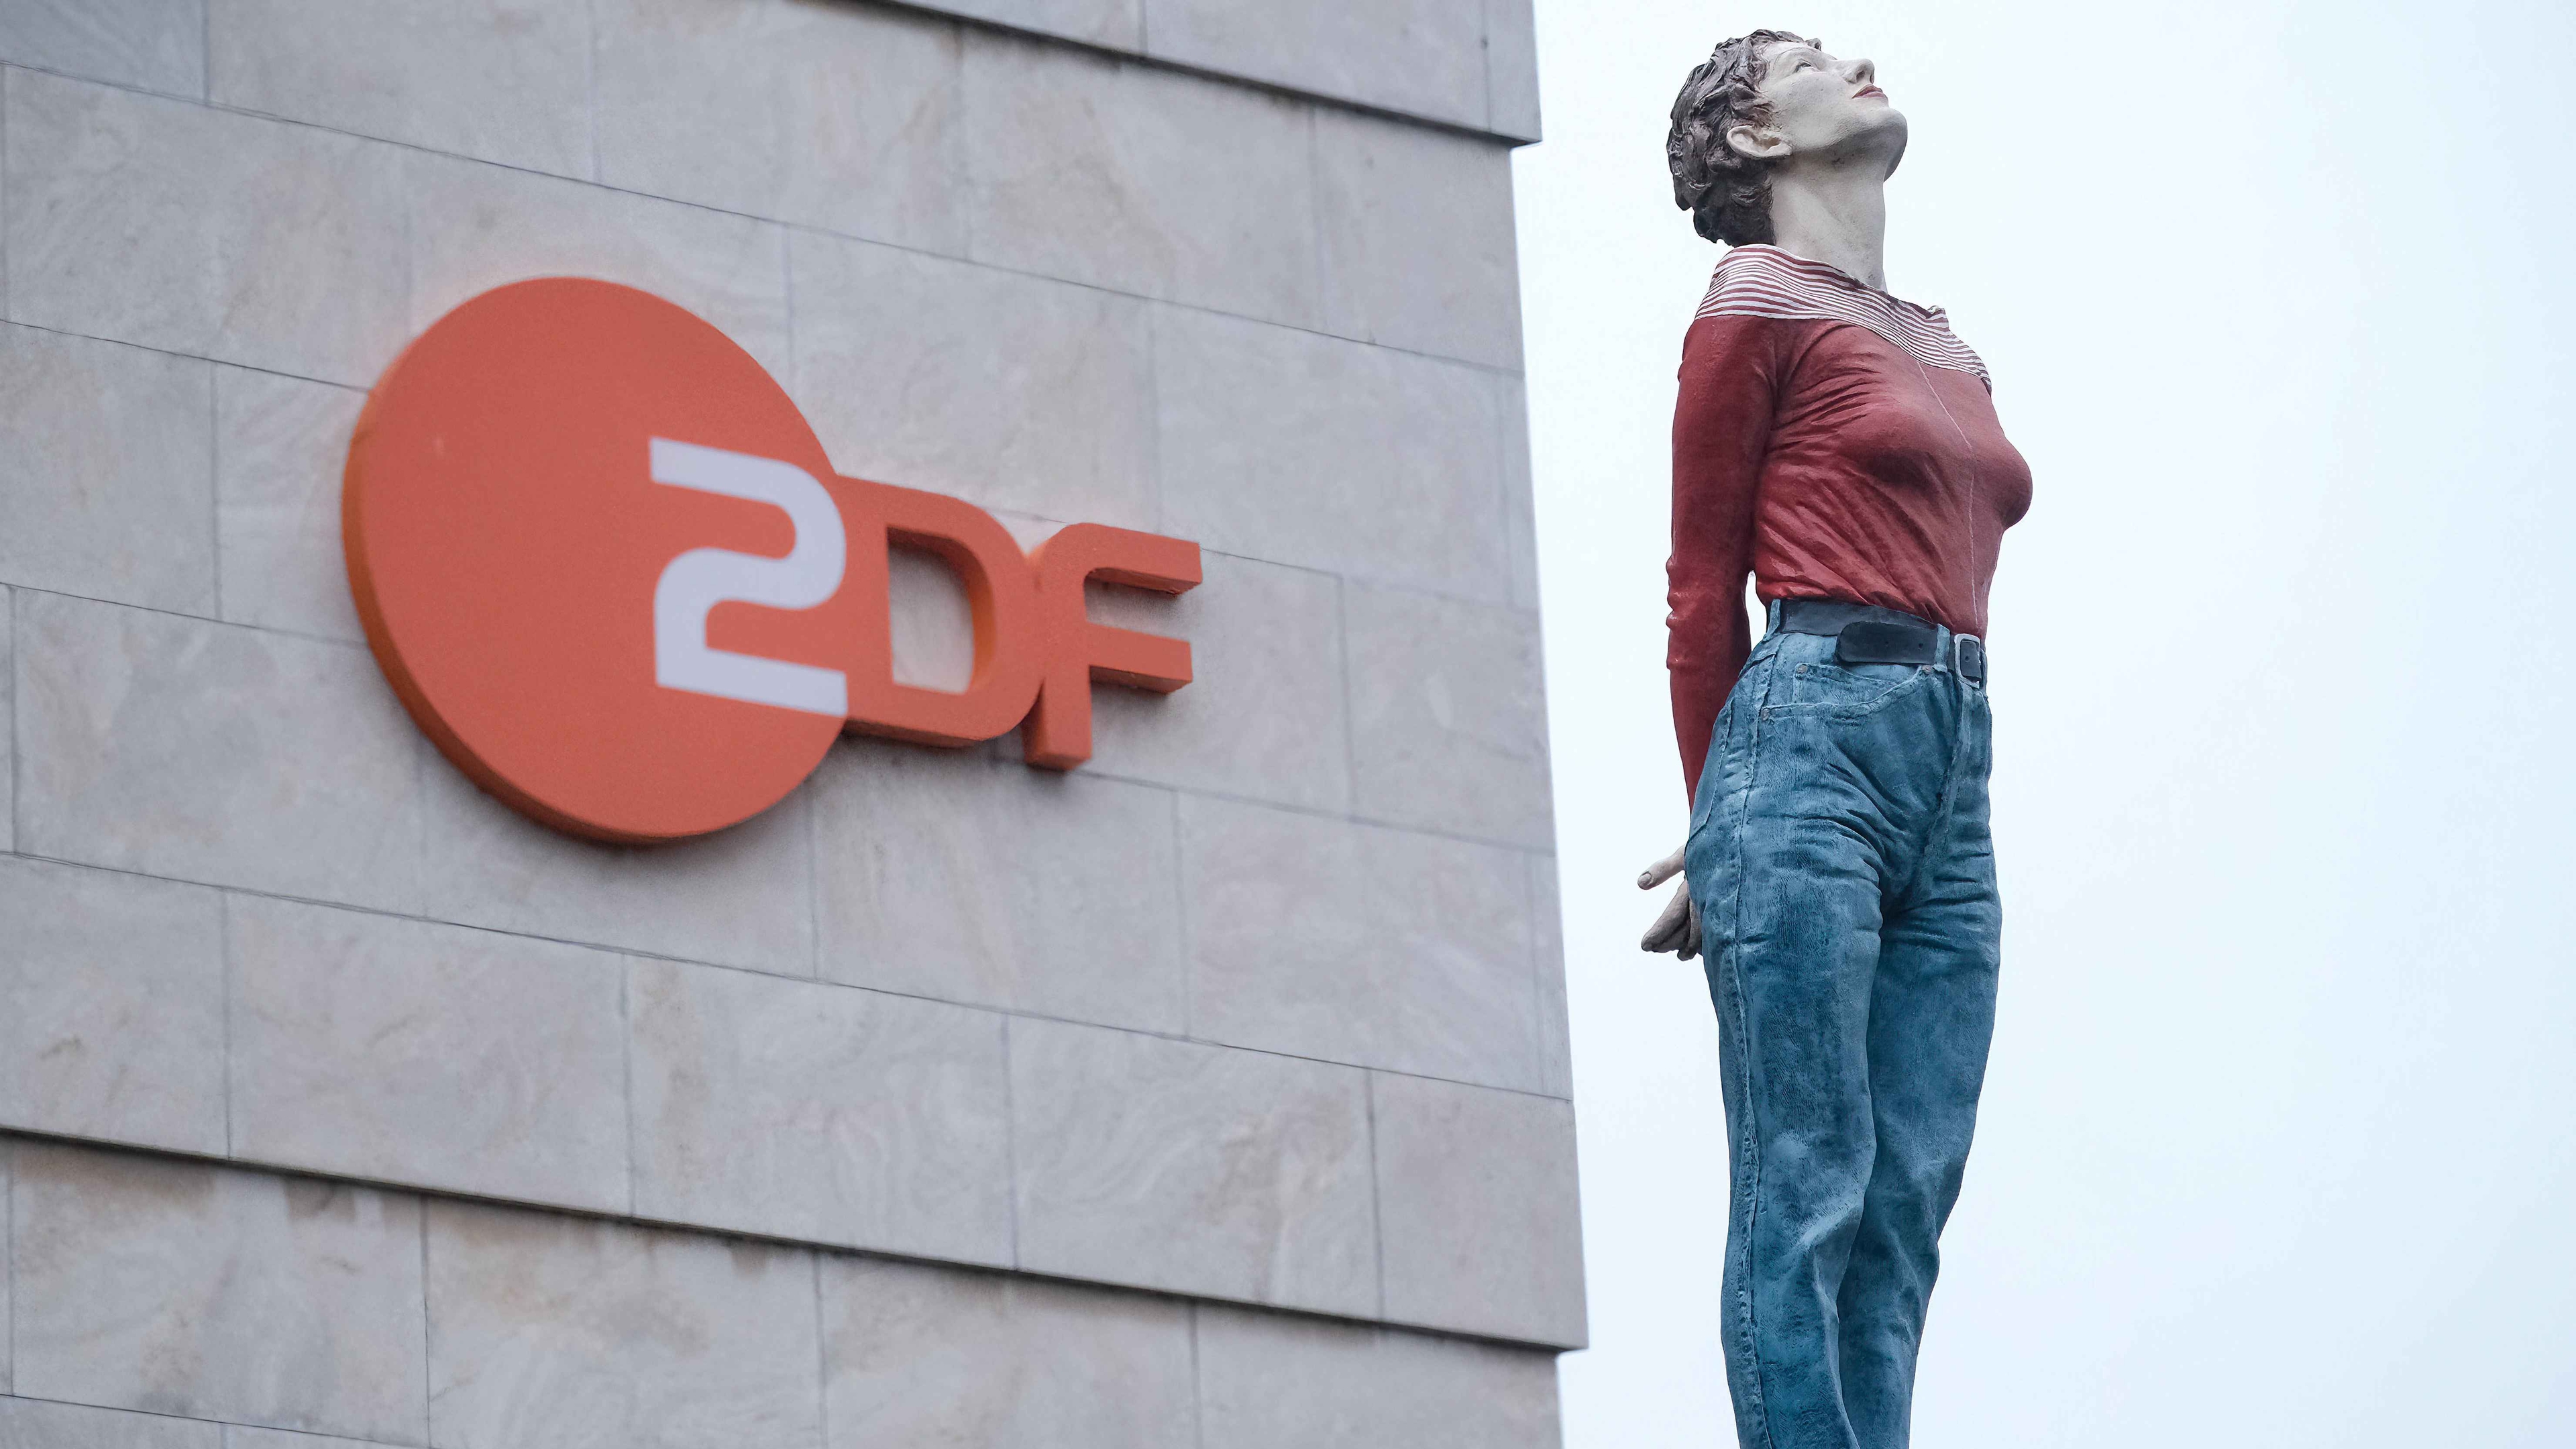 ZDF zur Filmförderungsreform: "Offene Punkte" und "verfassungsrechtlich problematisch"